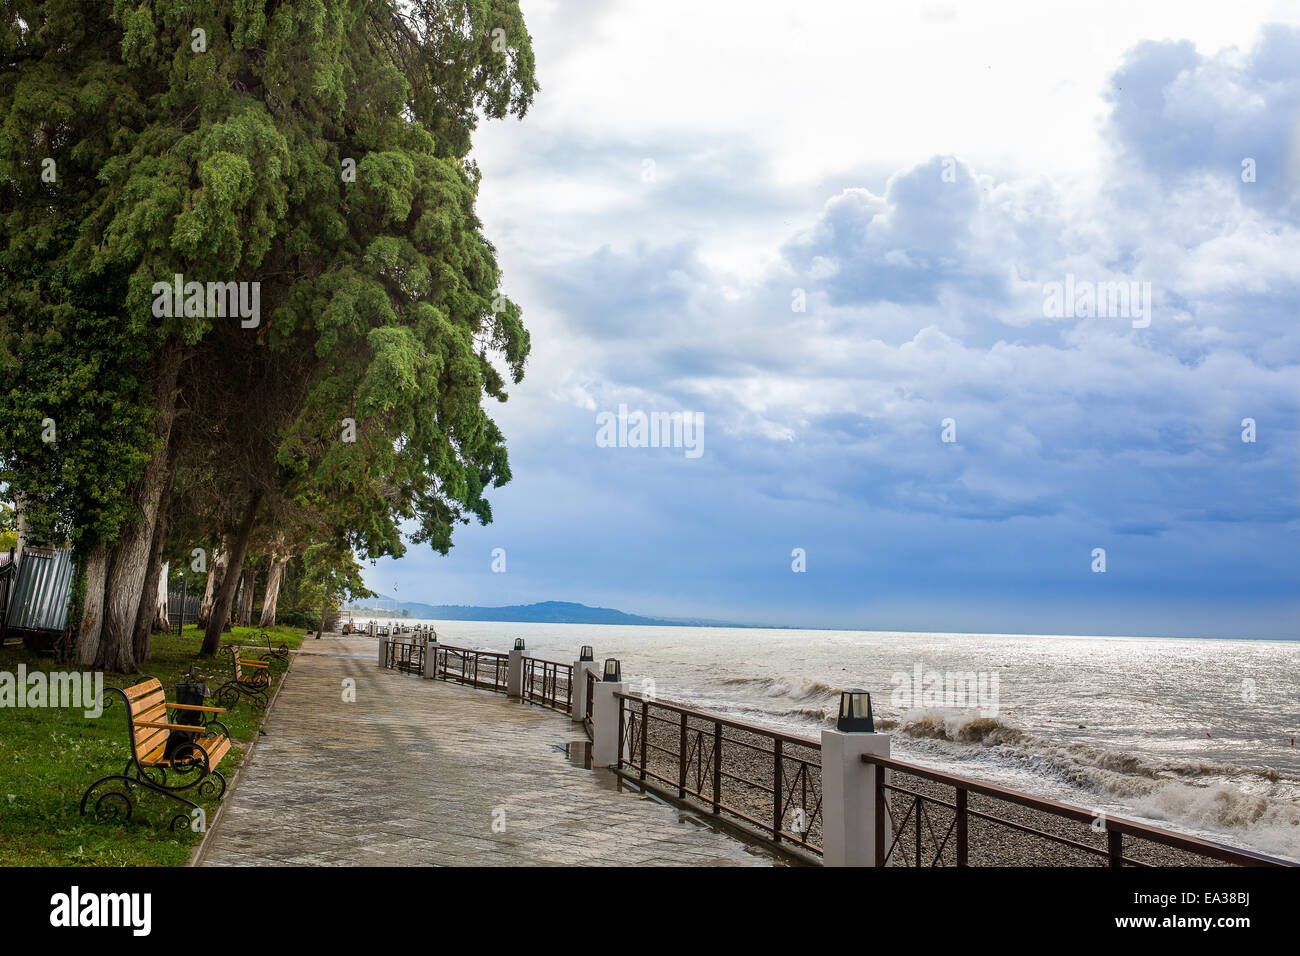 Black Sea embankment, New Athos, Abkhazia Stock Photo